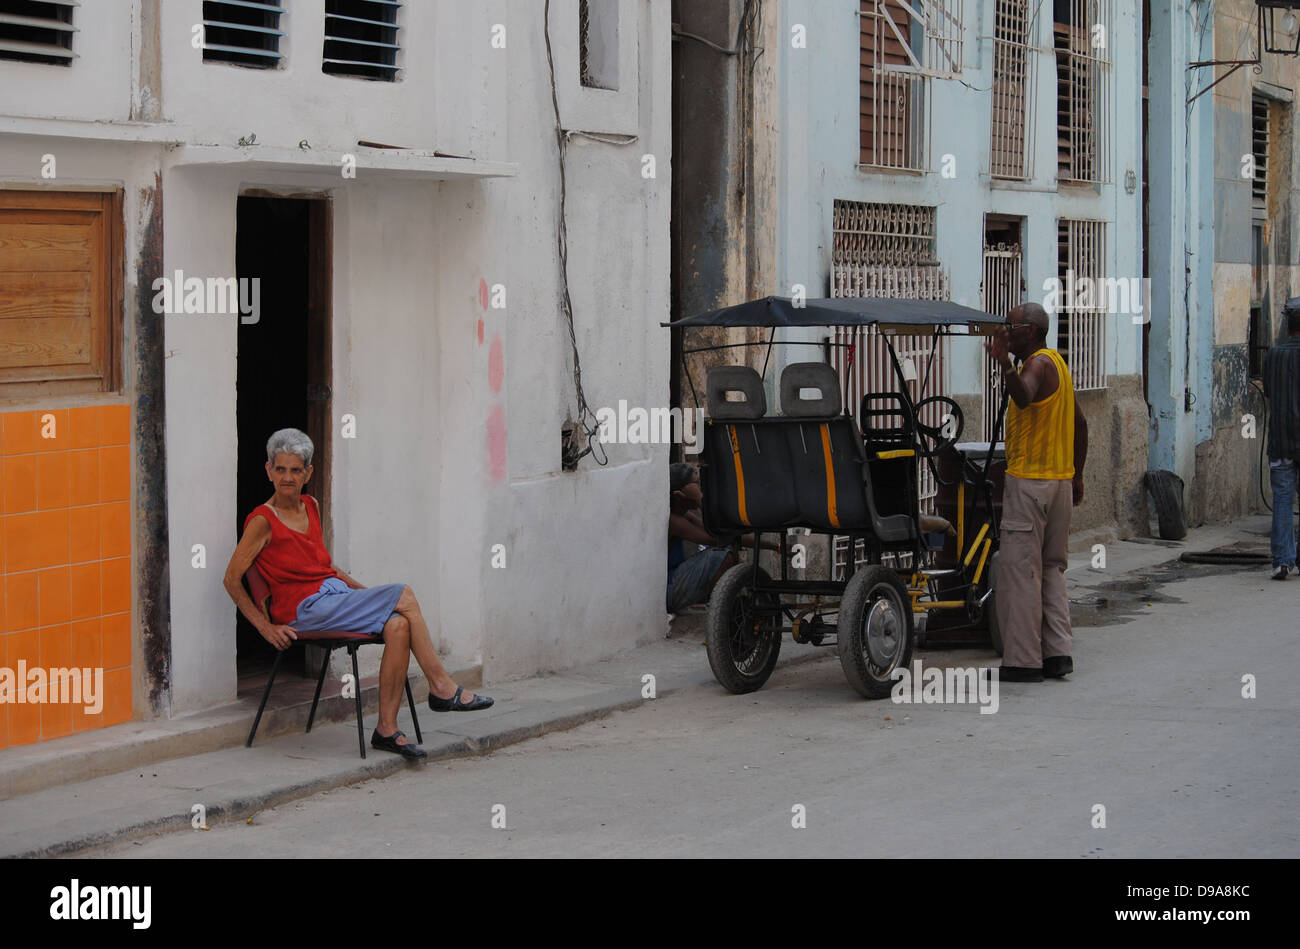 Cubans in the doorway Stock Photo